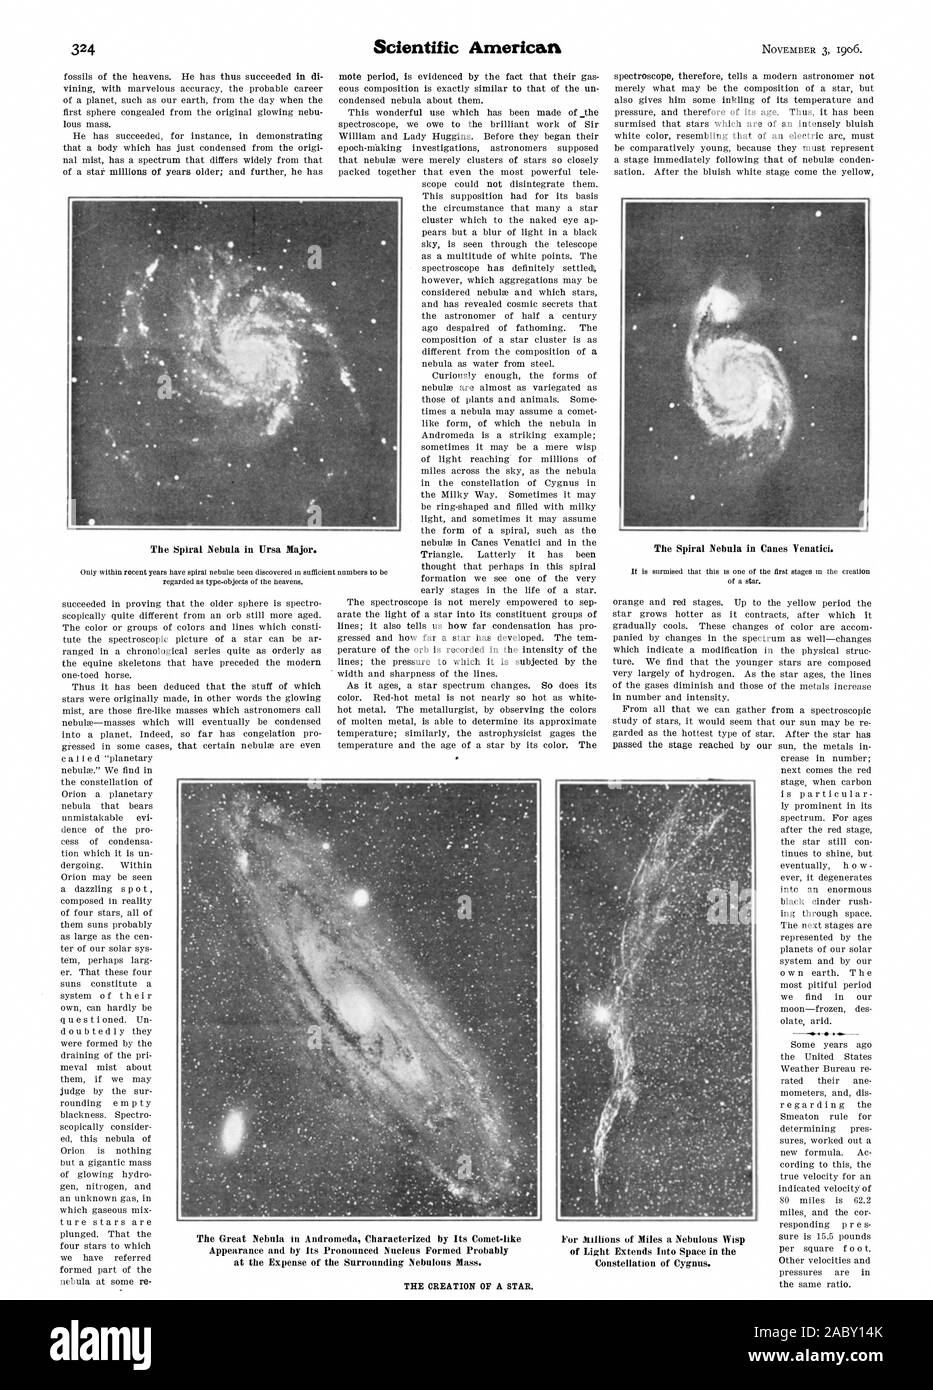 Die Schaffung eines Sterns. Die großen Nebel in Andromeda, durch seine Comet geprägt - wie Aussehen, die durch ihre ausgeprägte Kern vermutlich auf Kosten der uns umgebenden nebligen Masse gebildet. Für Millionen von Meilen ein nebulöses Wisp des Lichts erstreckt sich in den Weltraum im Sternbild Cygnus. Die Spirale der Nebel in Ursa Major. Die spiral nebula in Canes Venatici. Scientific American, 1906-11-03 Stockfoto